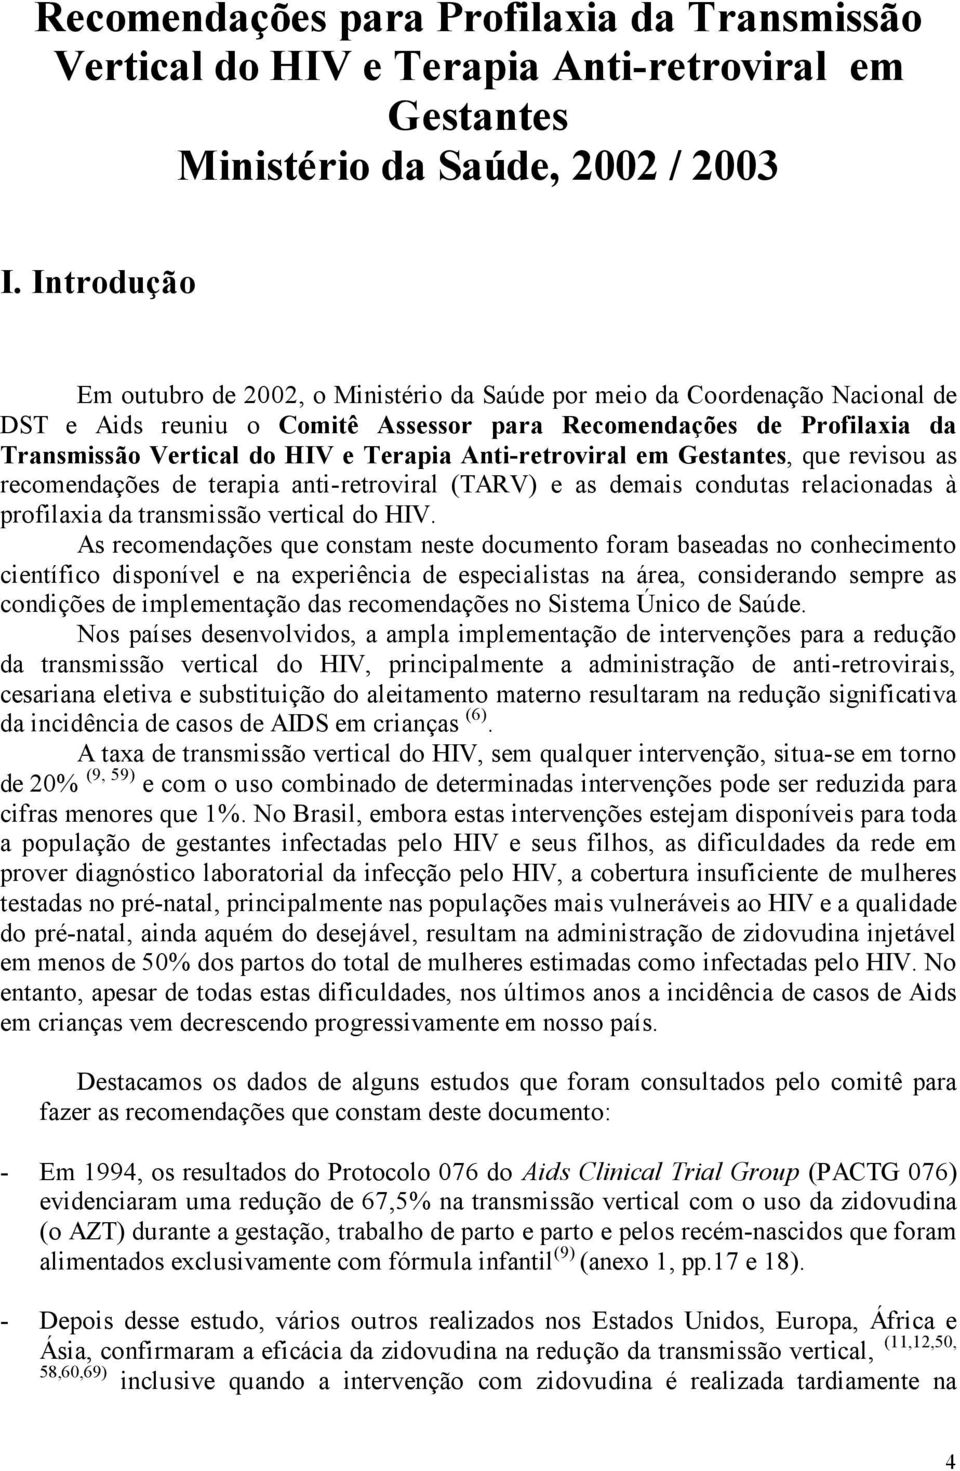 Anti-retroviral em Gestantes, que revisou as recomendações de terapia anti-retroviral (TARV) e as demais condutas relacionadas à profilaxia da transmissão vertical do HIV.